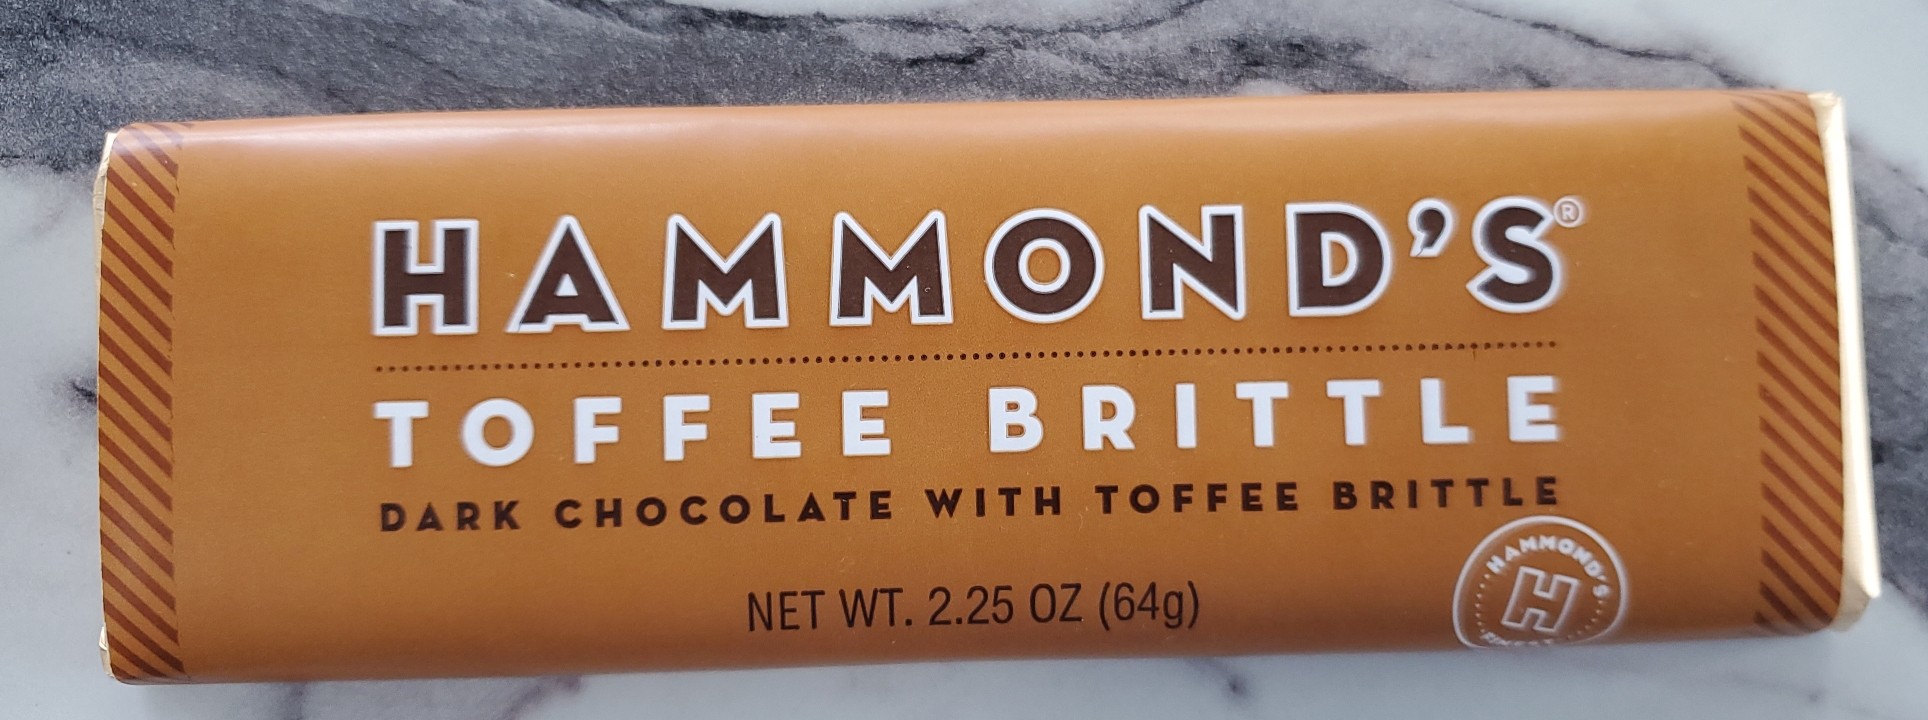 Hammond's Toffee Brittle